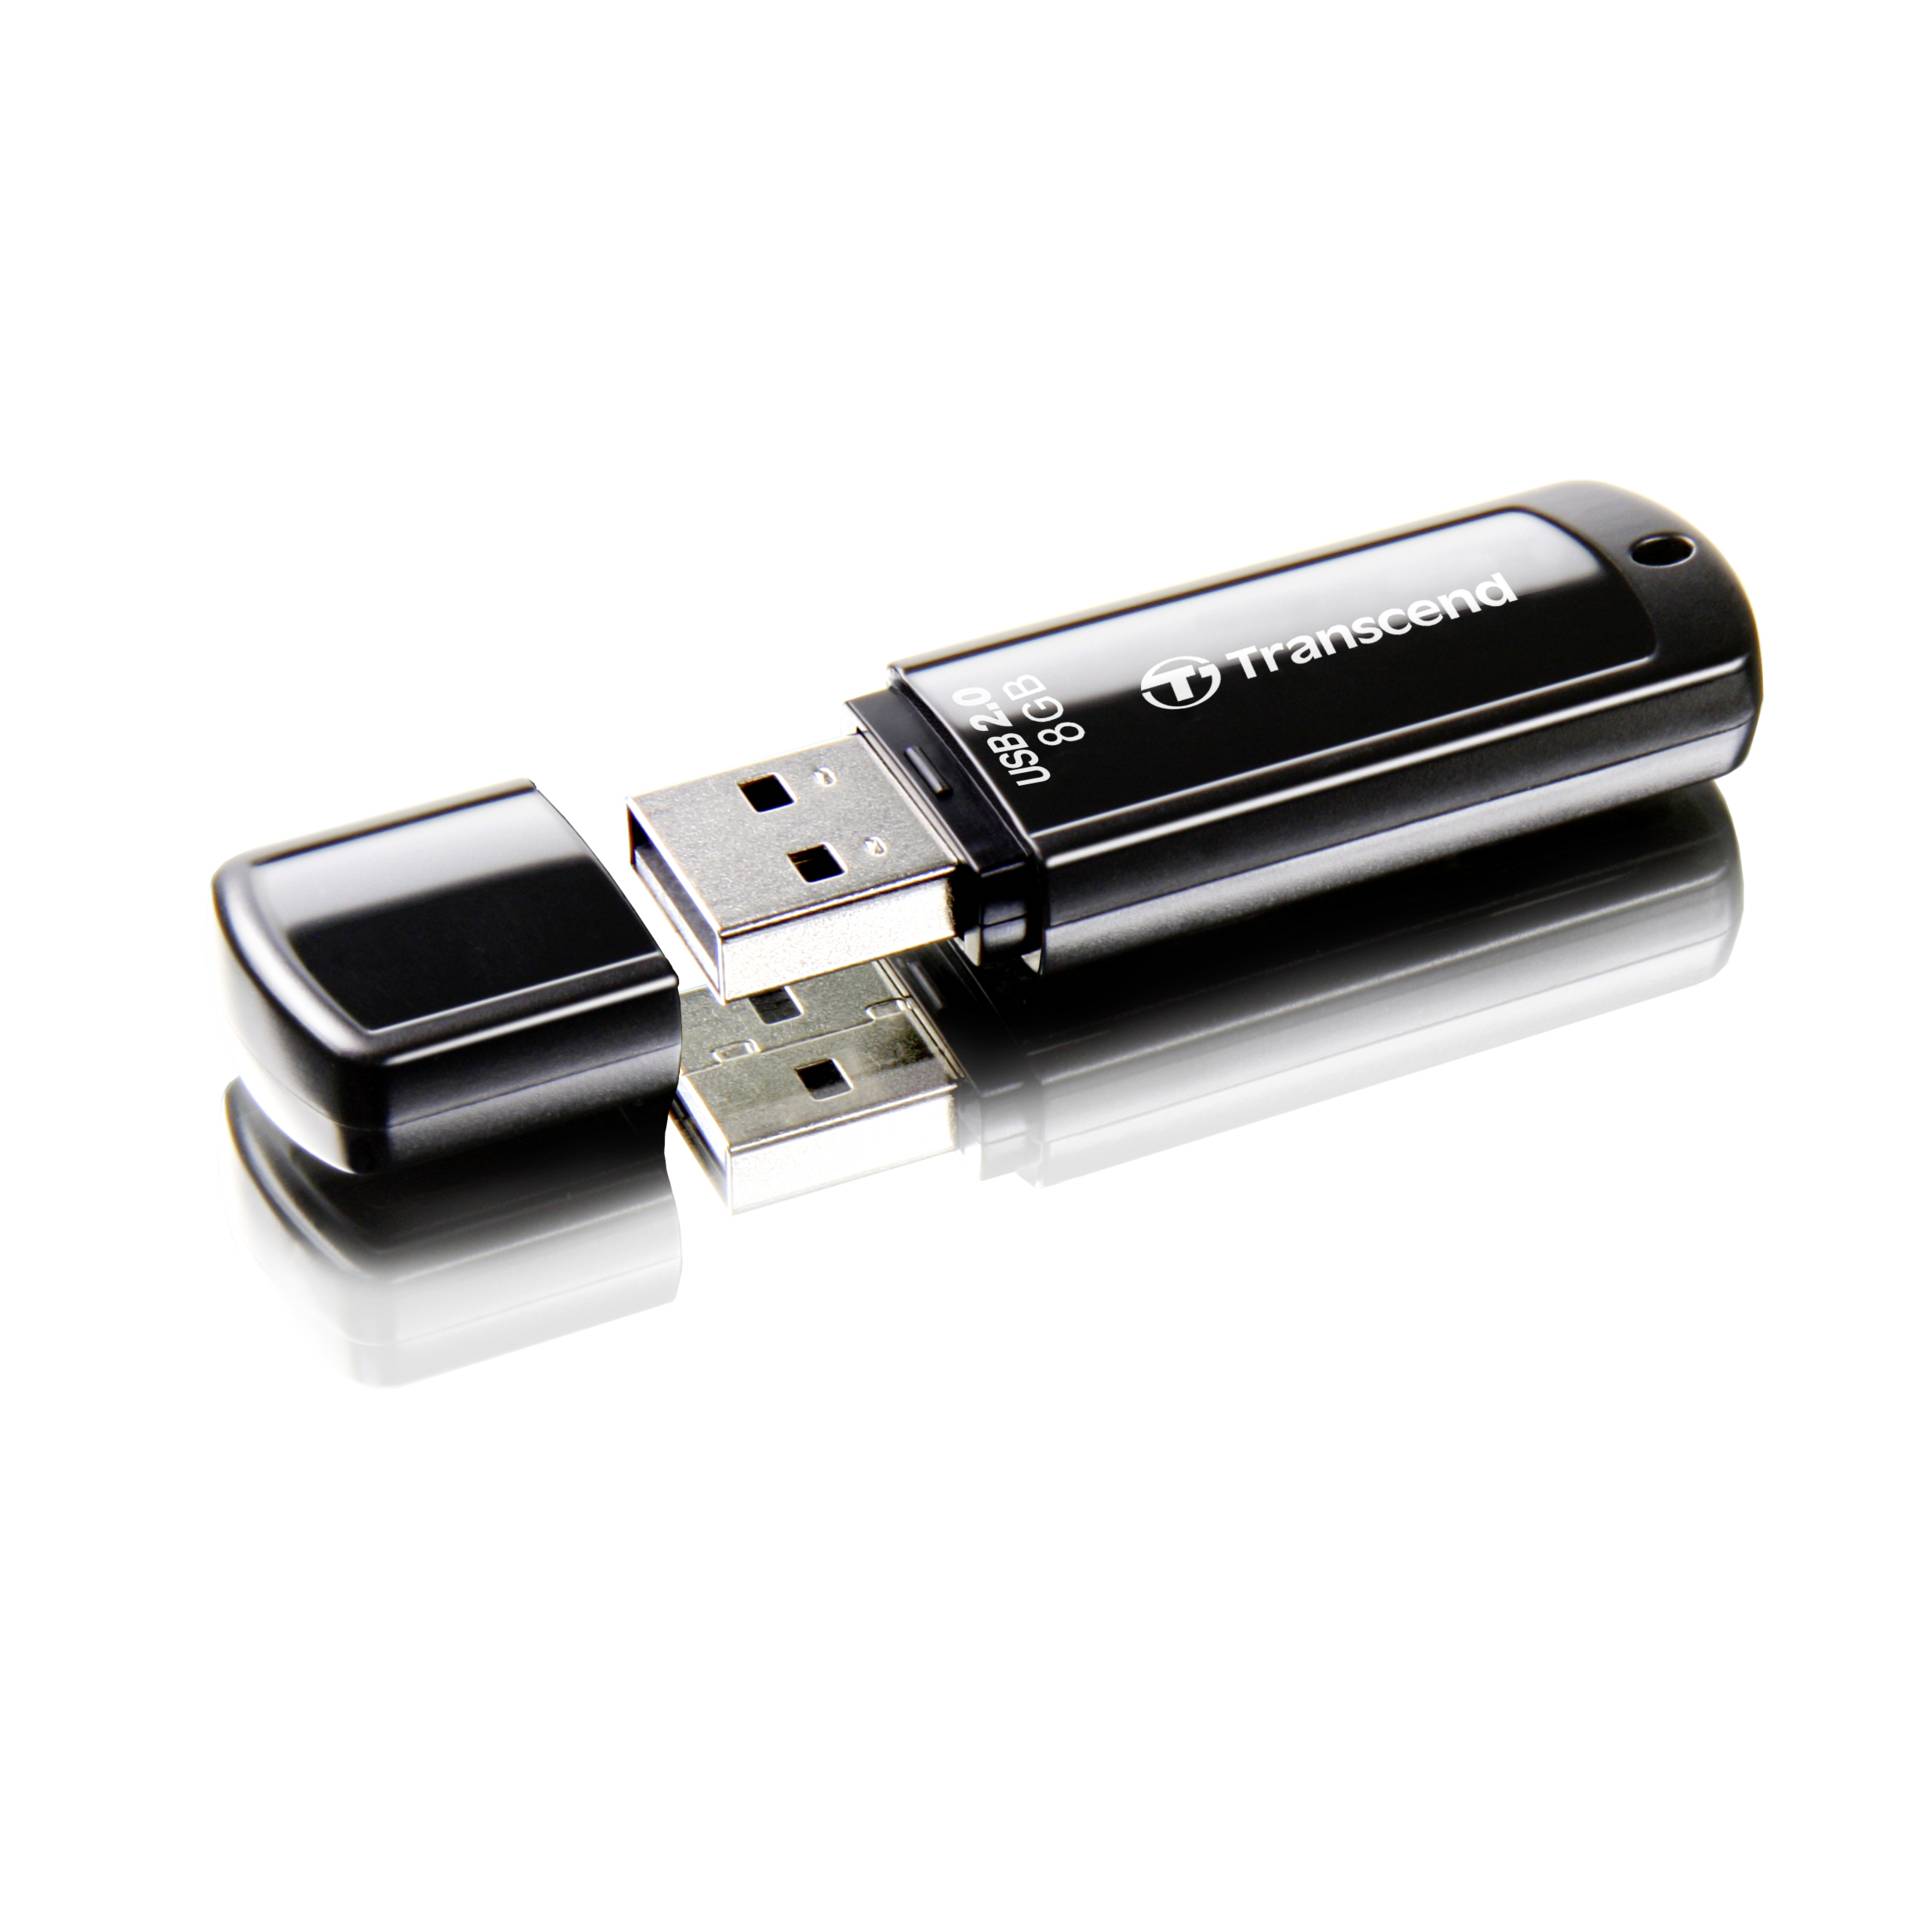 8 GB Transcend JetFlash 350 schwarz USB 2.0 Stick lesen: 15MB/s, schreiben: 7MB/s